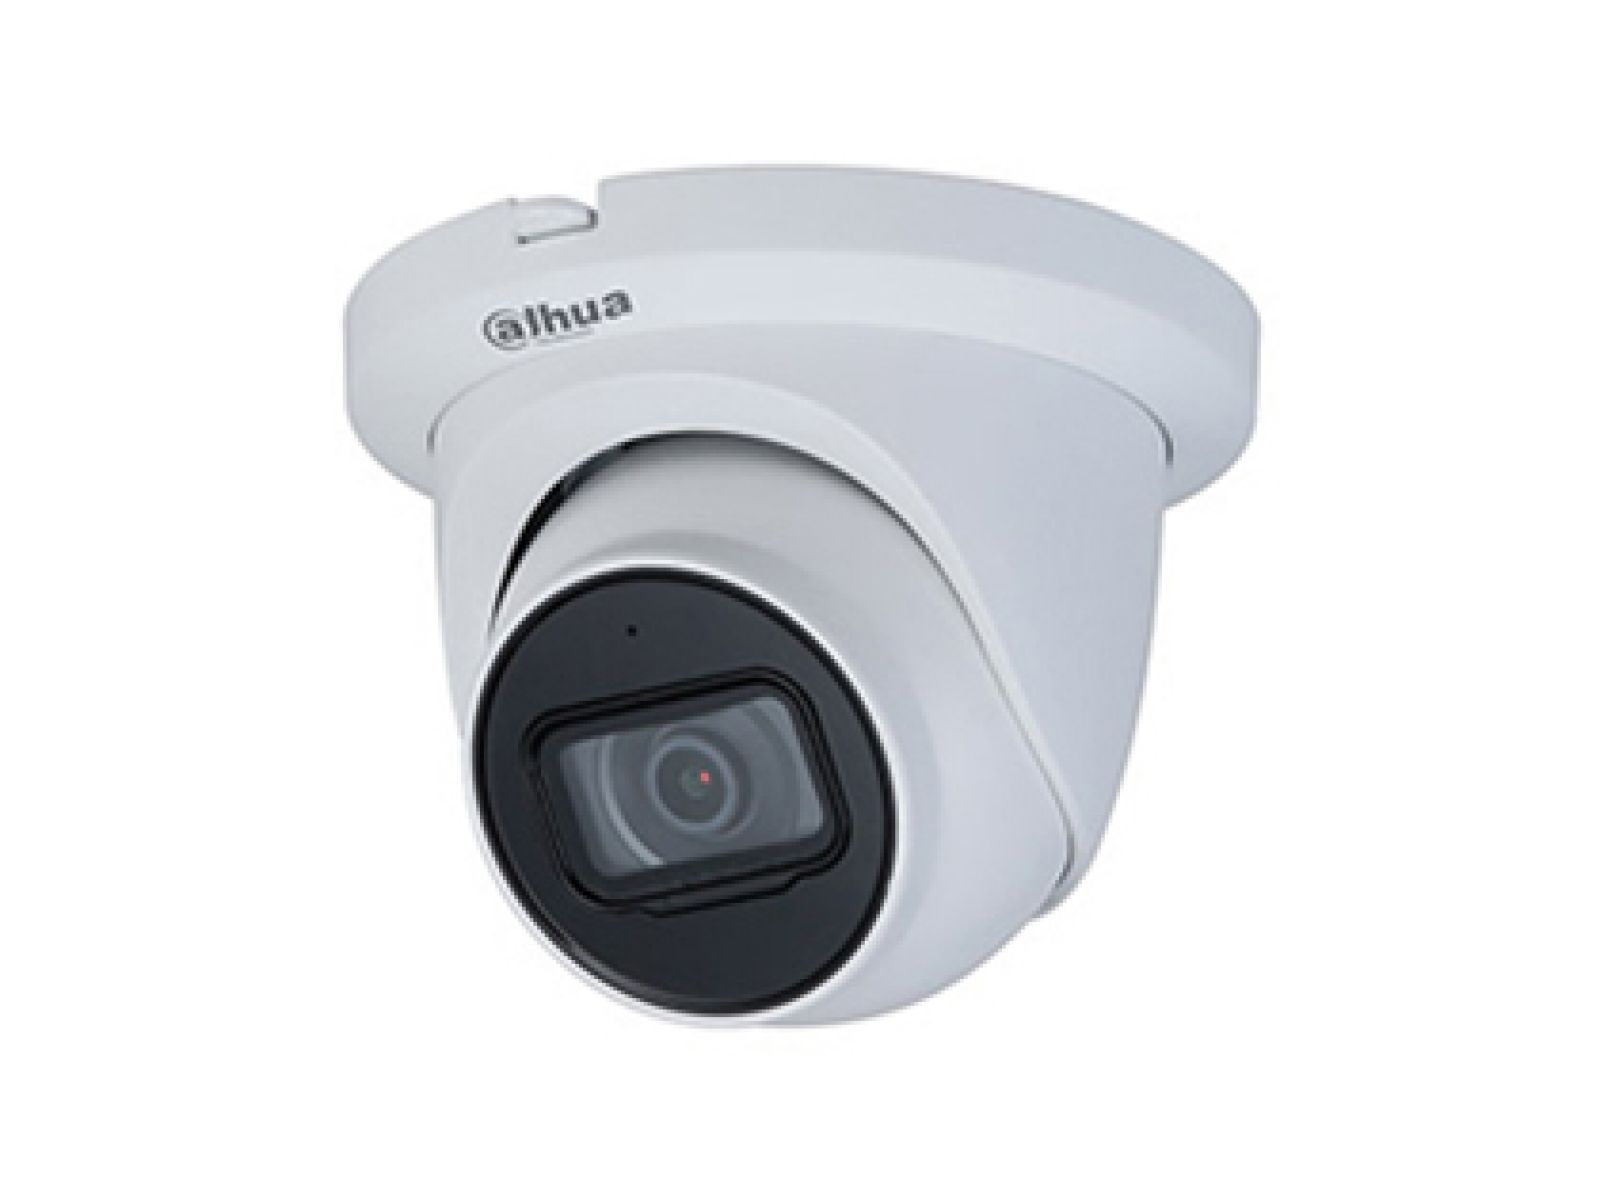 White Dahua security camera.